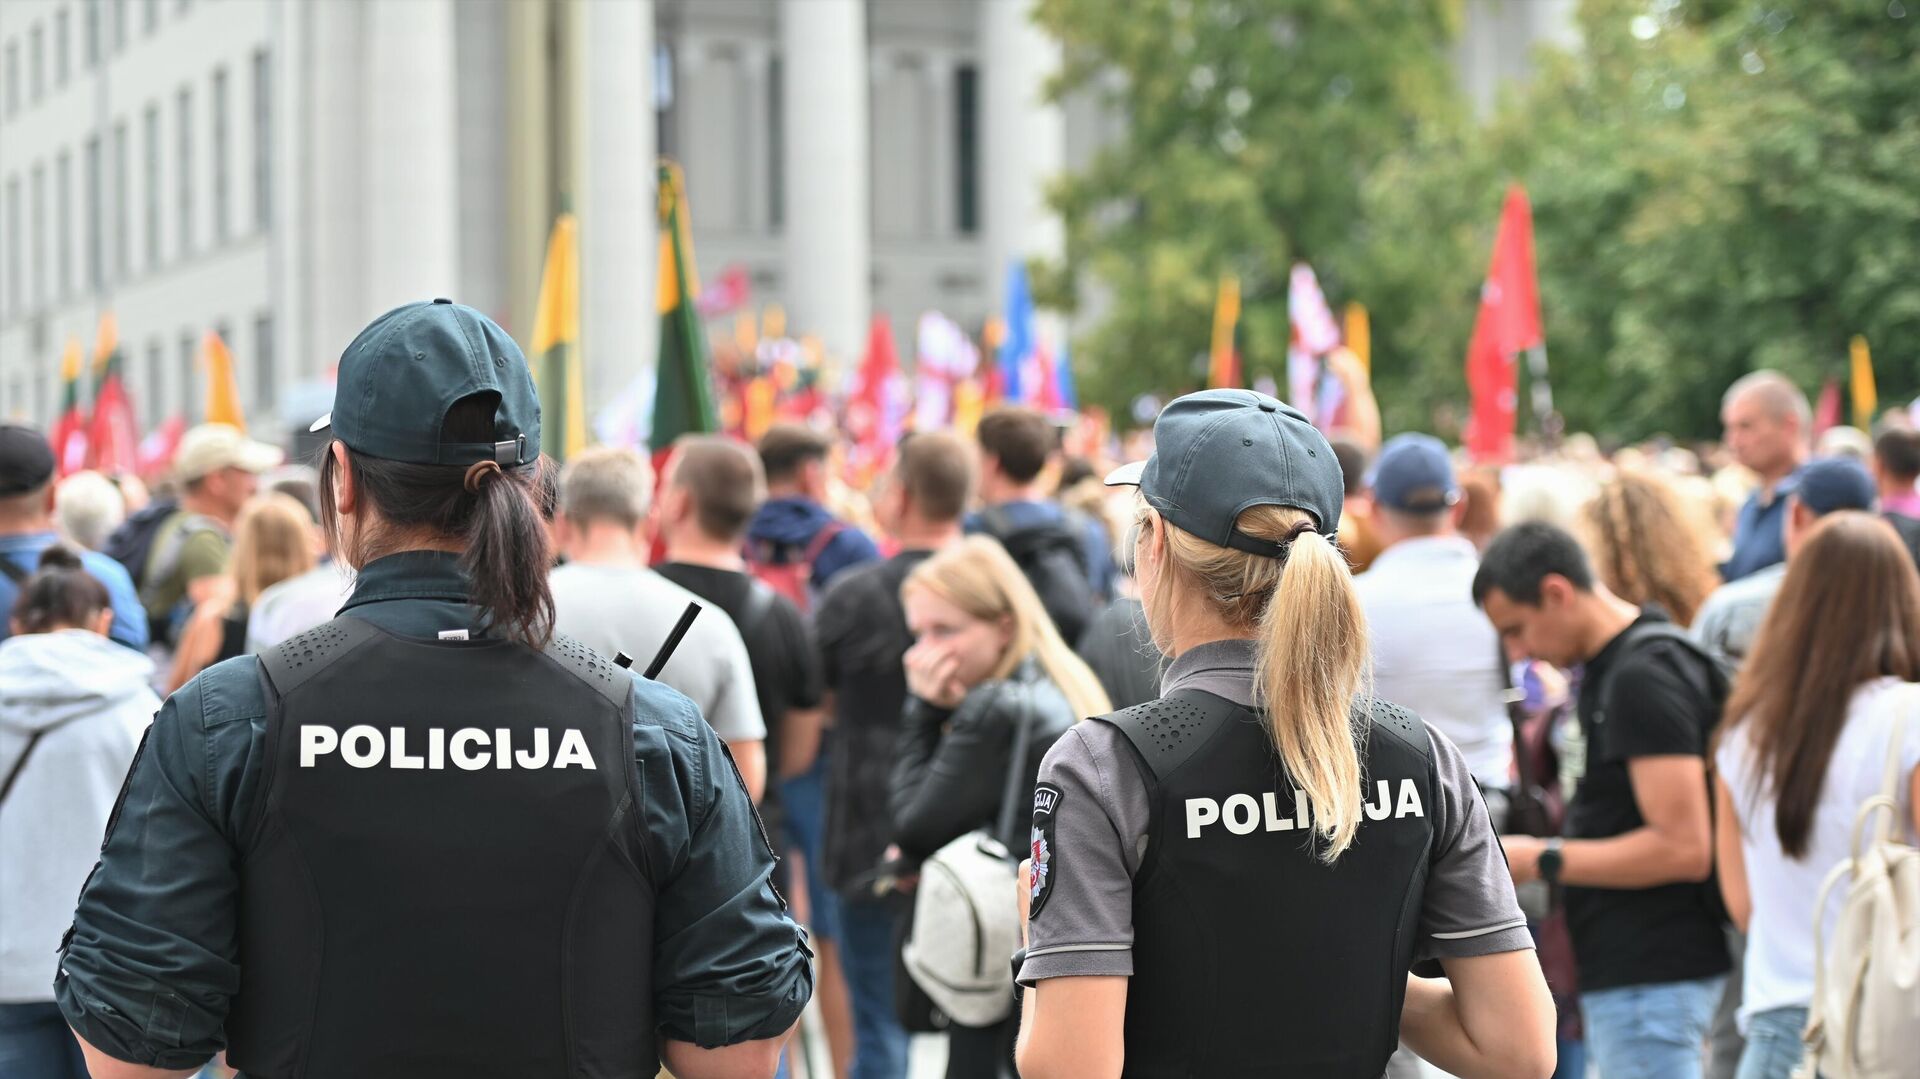 Полиция на митинге у здания Сейма Литвы - Sputnik Lietuva, 1920, 11.08.2021